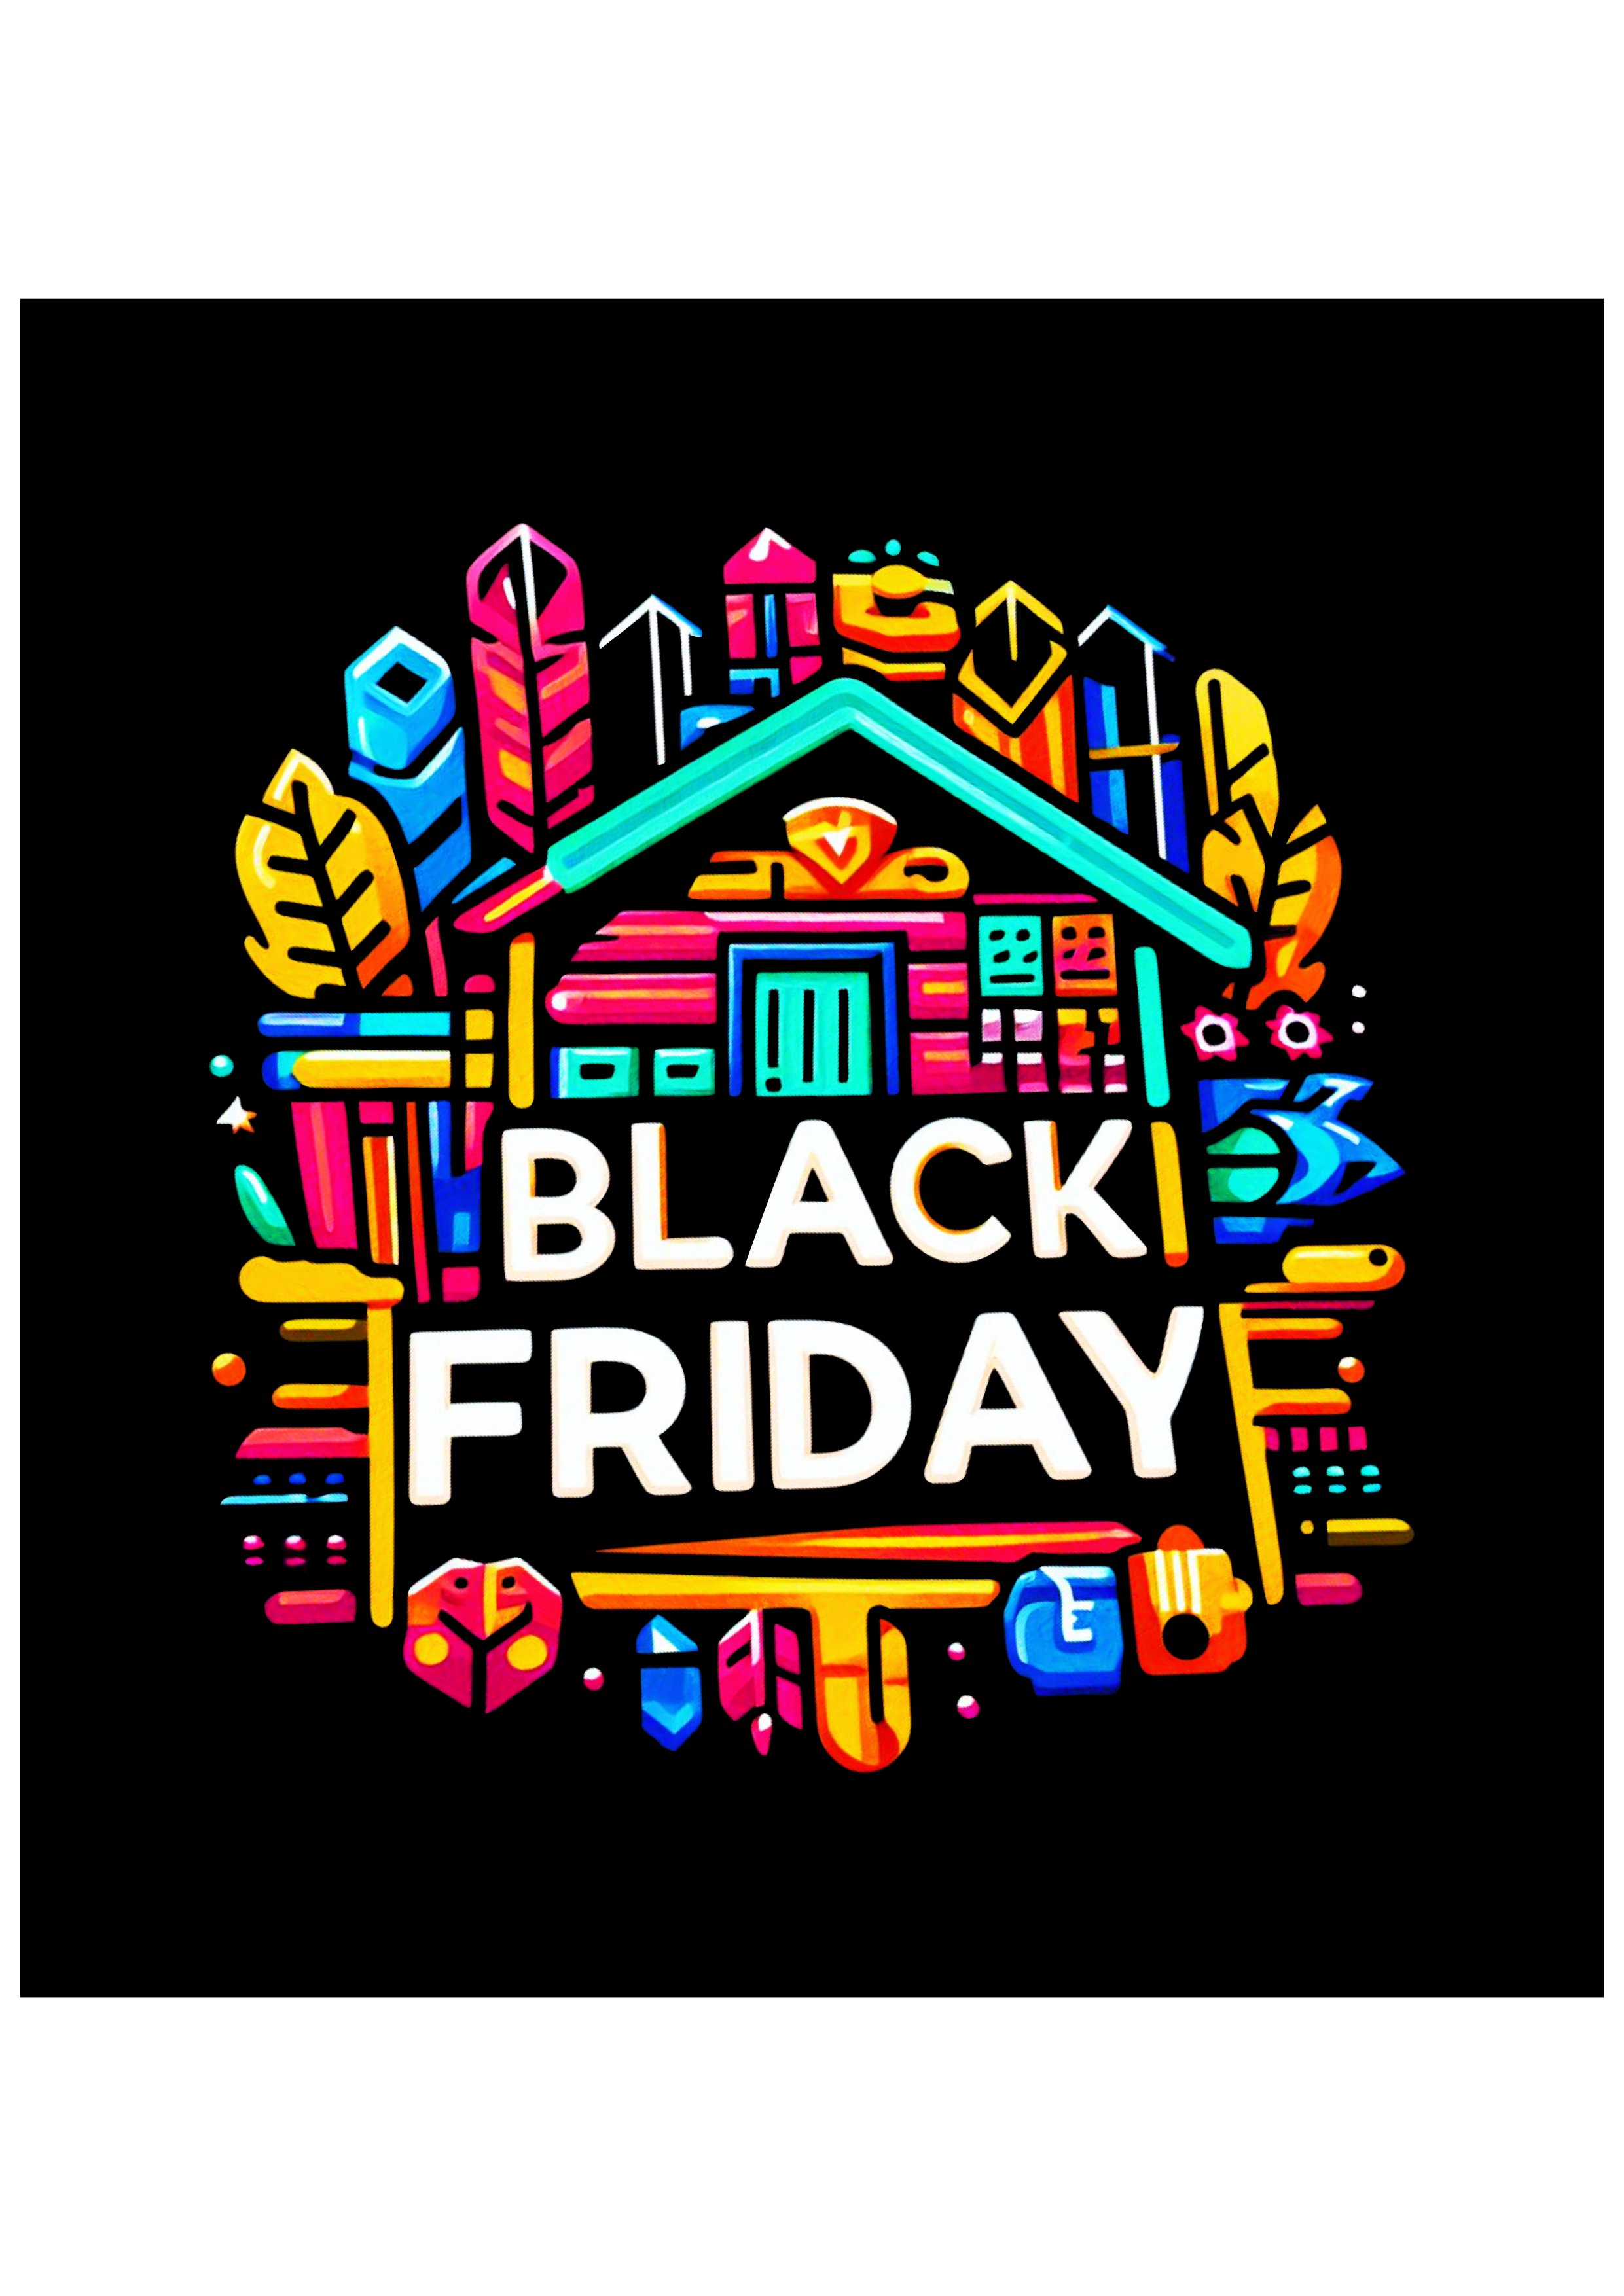 Black Friday tags para decoração design artes gráficas free logomarca png